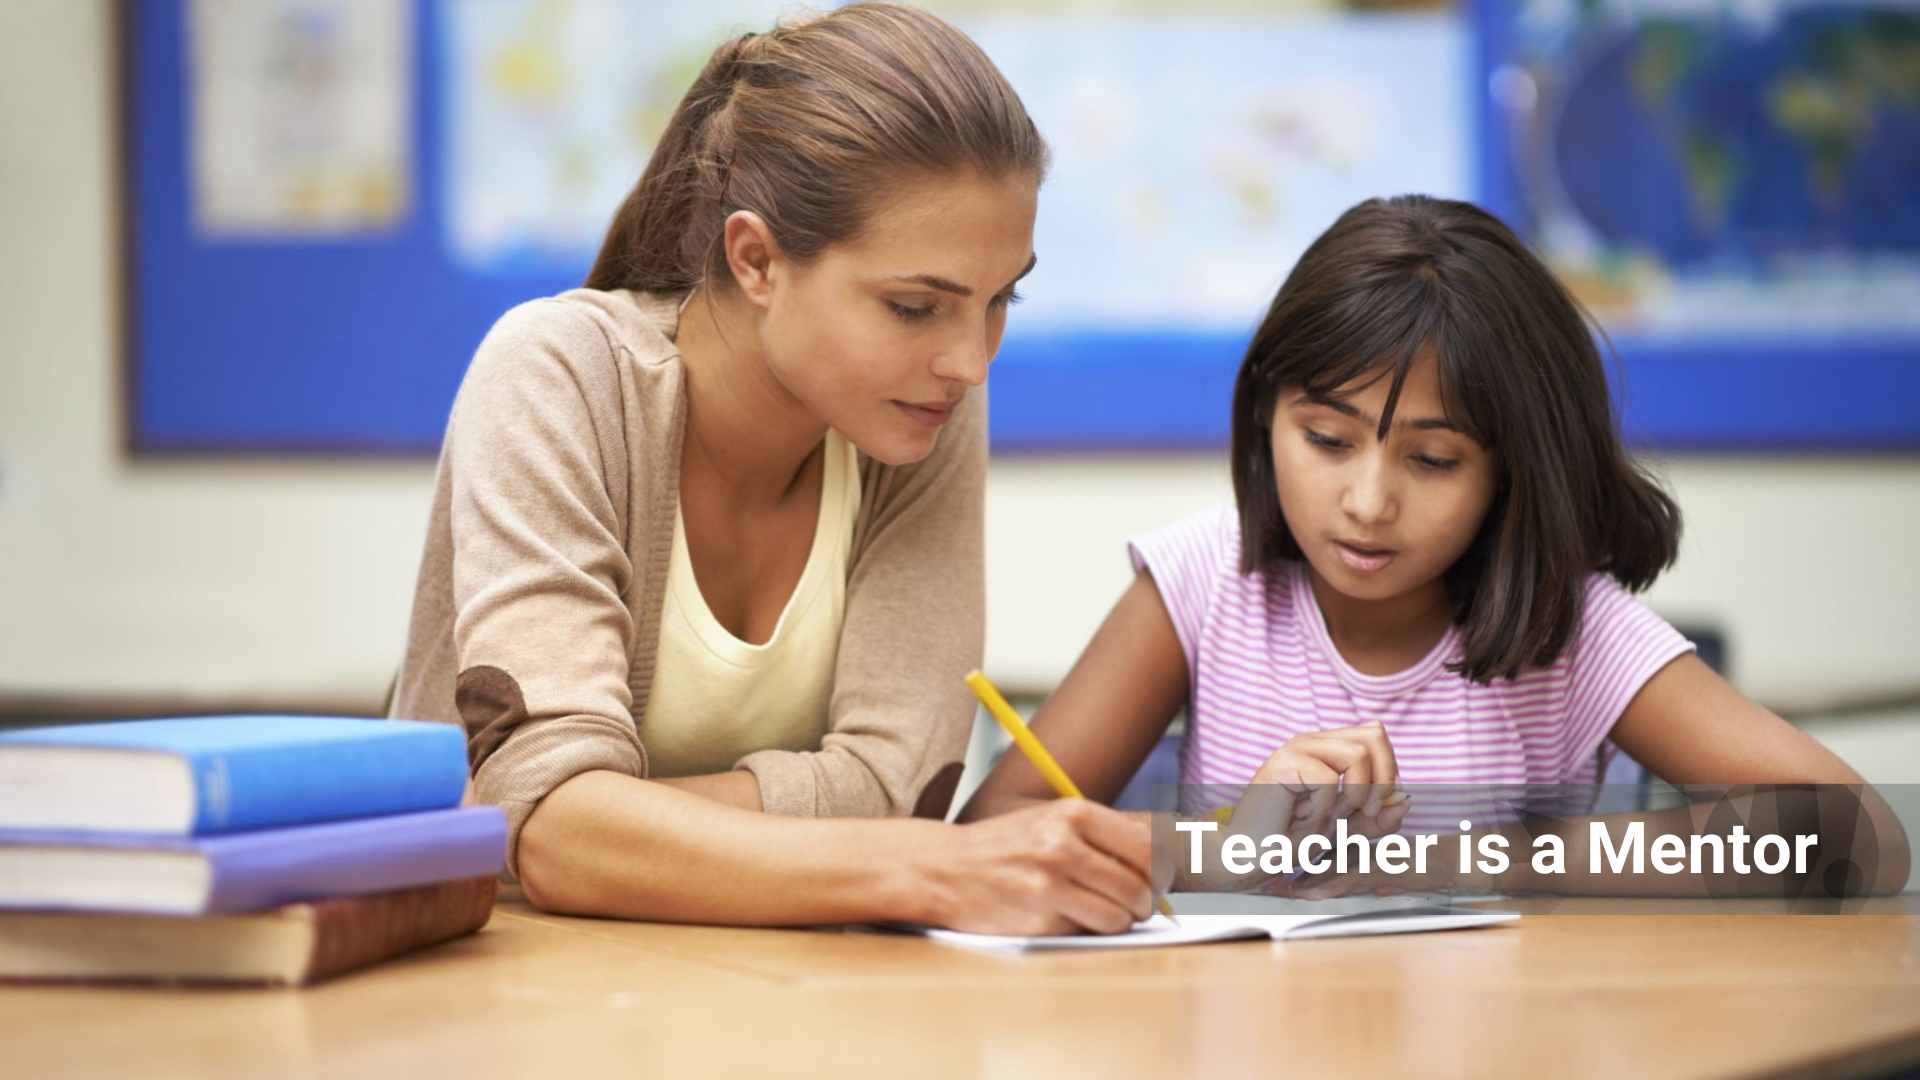 Teacher as Mentor